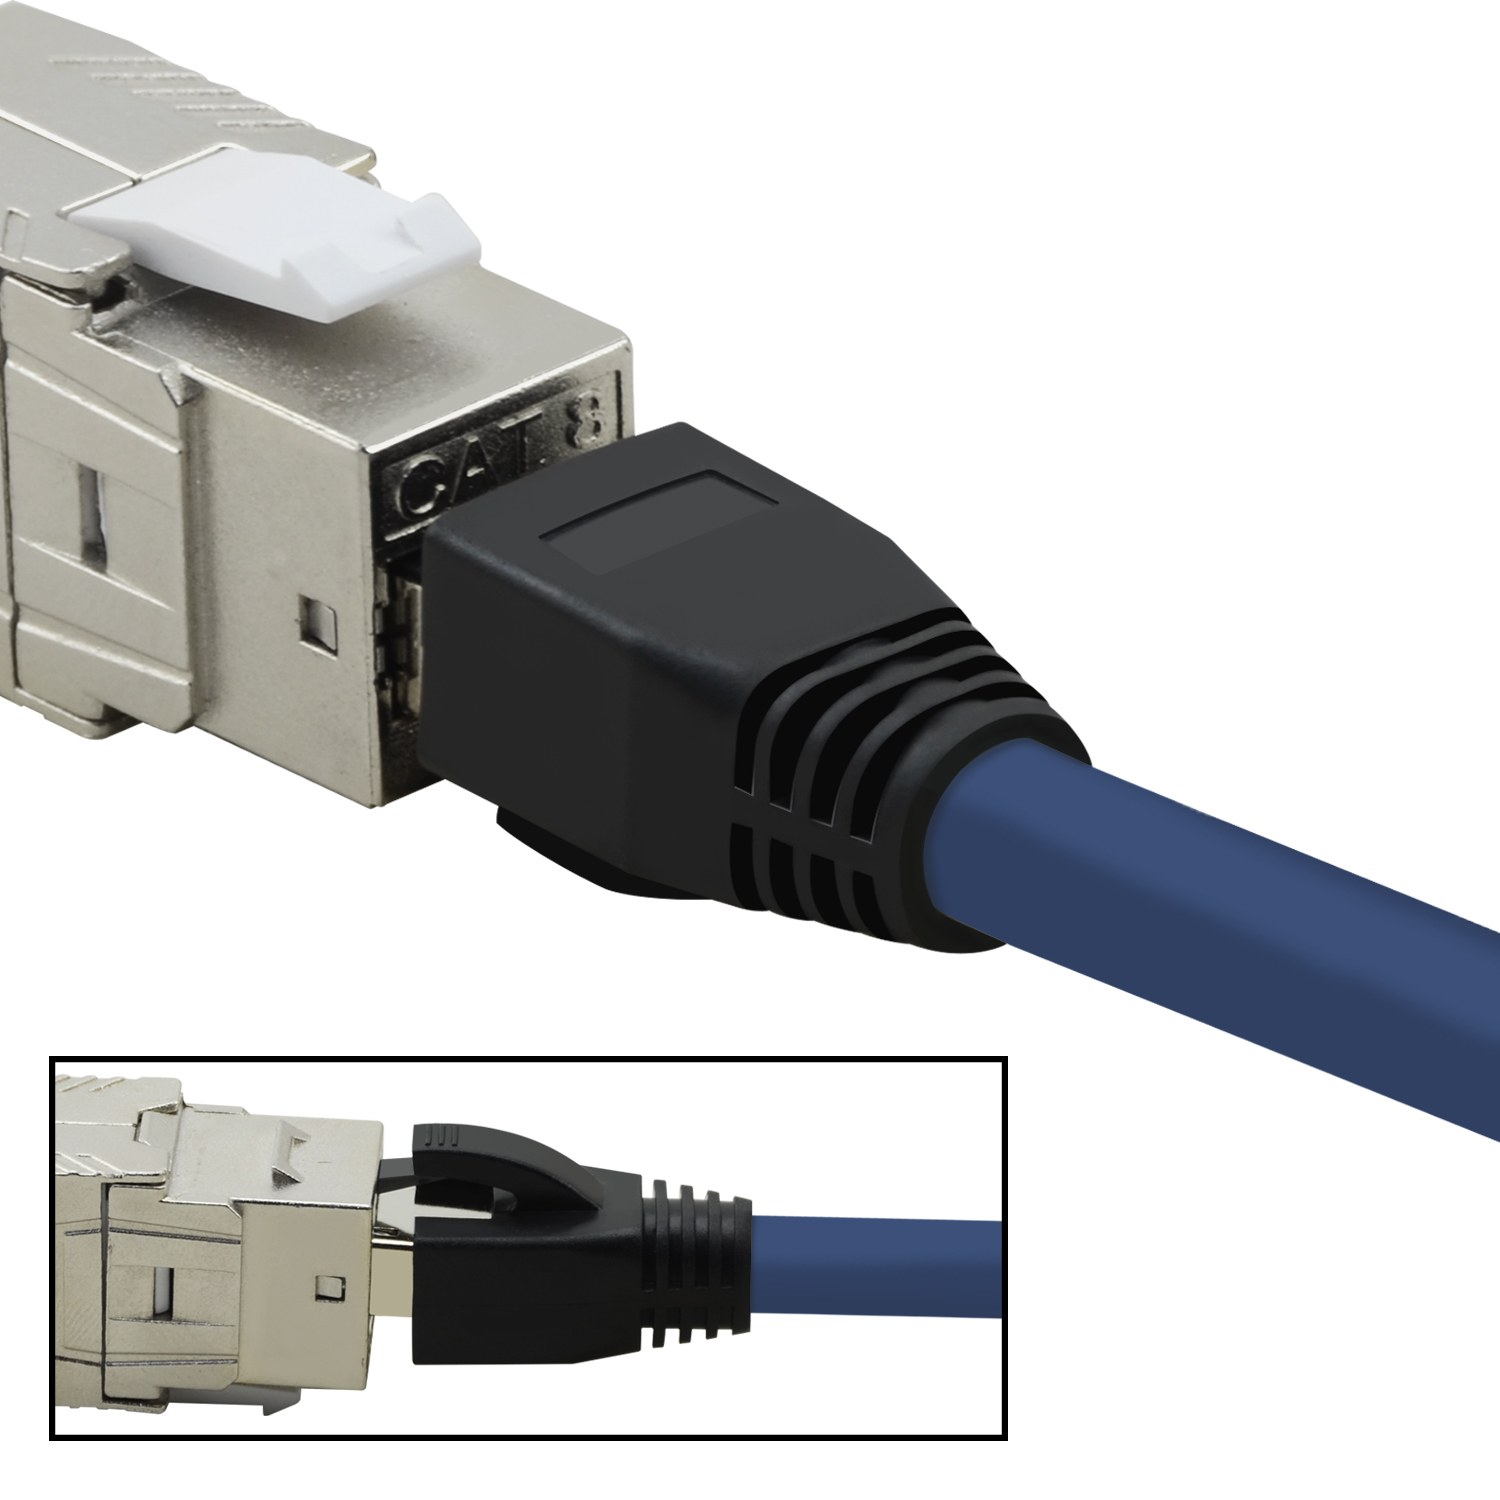 m Netzwerkkabel, Netzwerkkabel GBit, S/FTP 40 10 TPFNET / blau, 10m Patchkabel